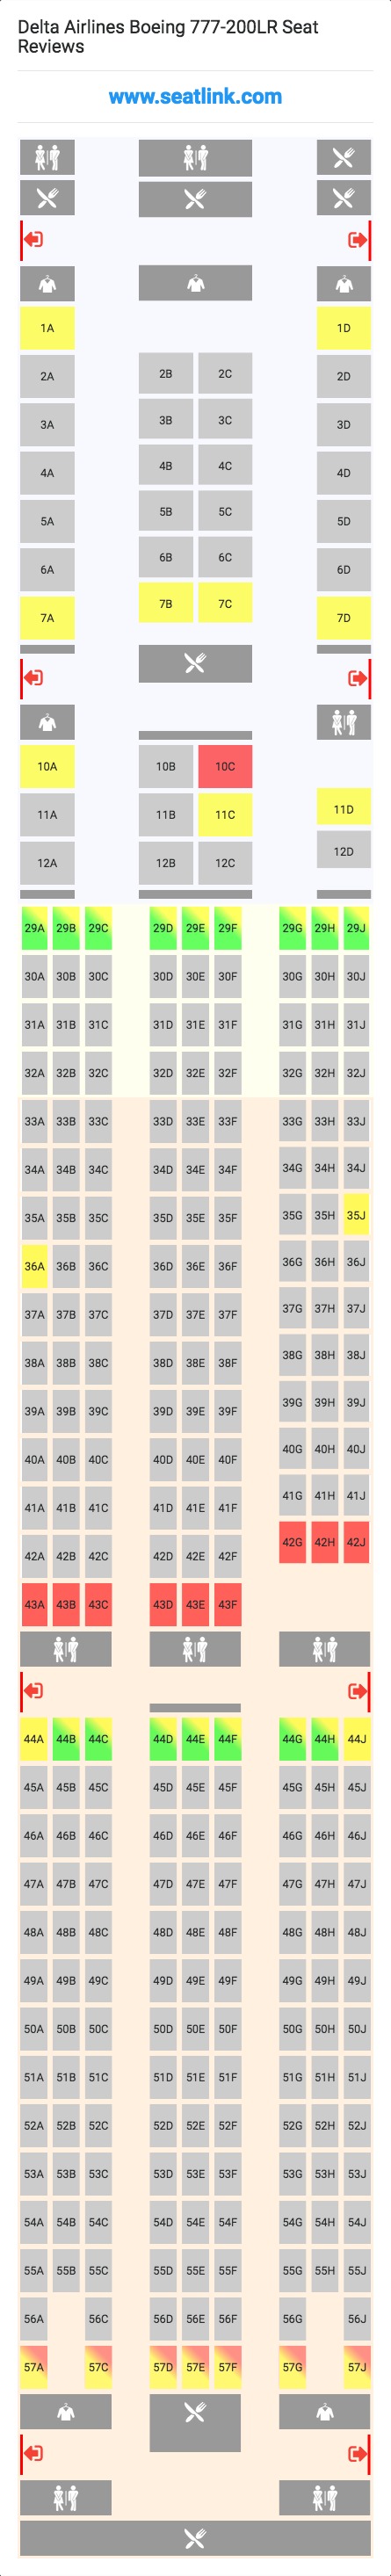 Air Canada 777 200lr Seating Chart